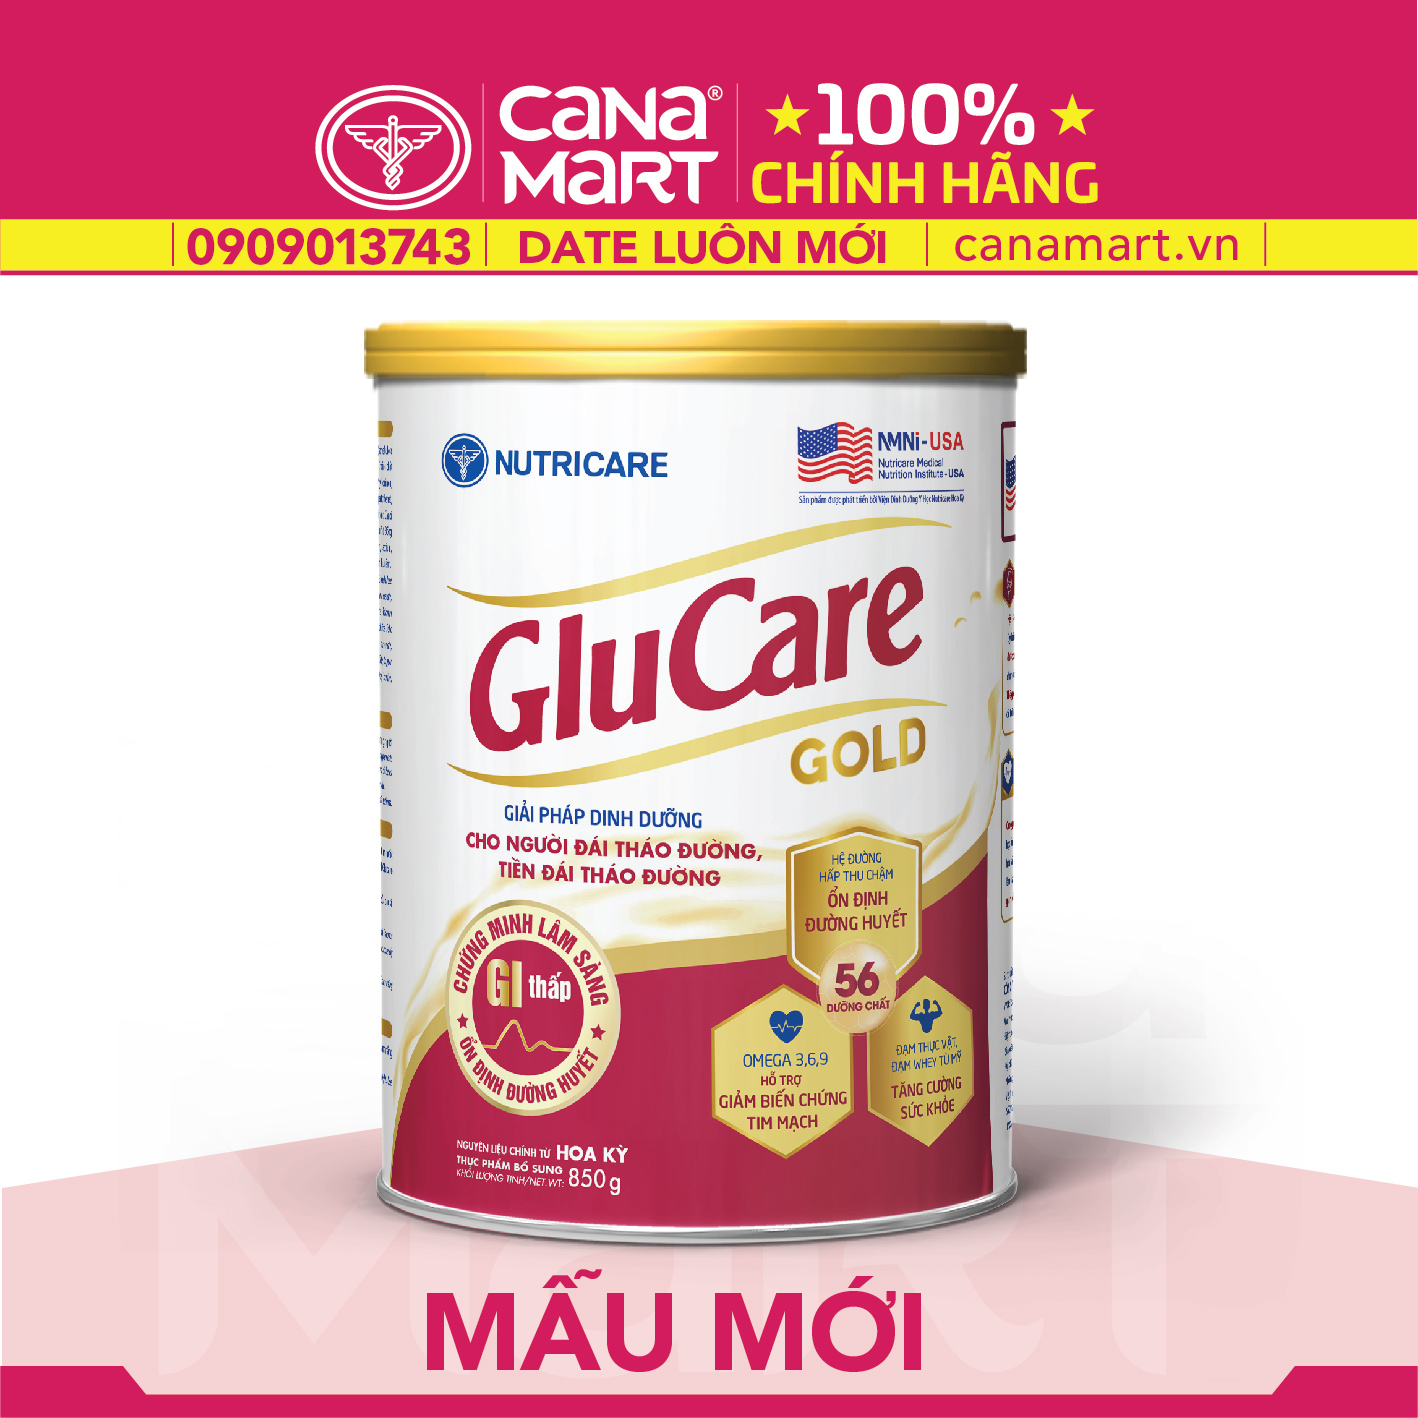 Sữa bột tốt Nutricare Glucare Gold tốt cho người tiểu đường, phụ nữ tiểu đường thai kỳ (850g)